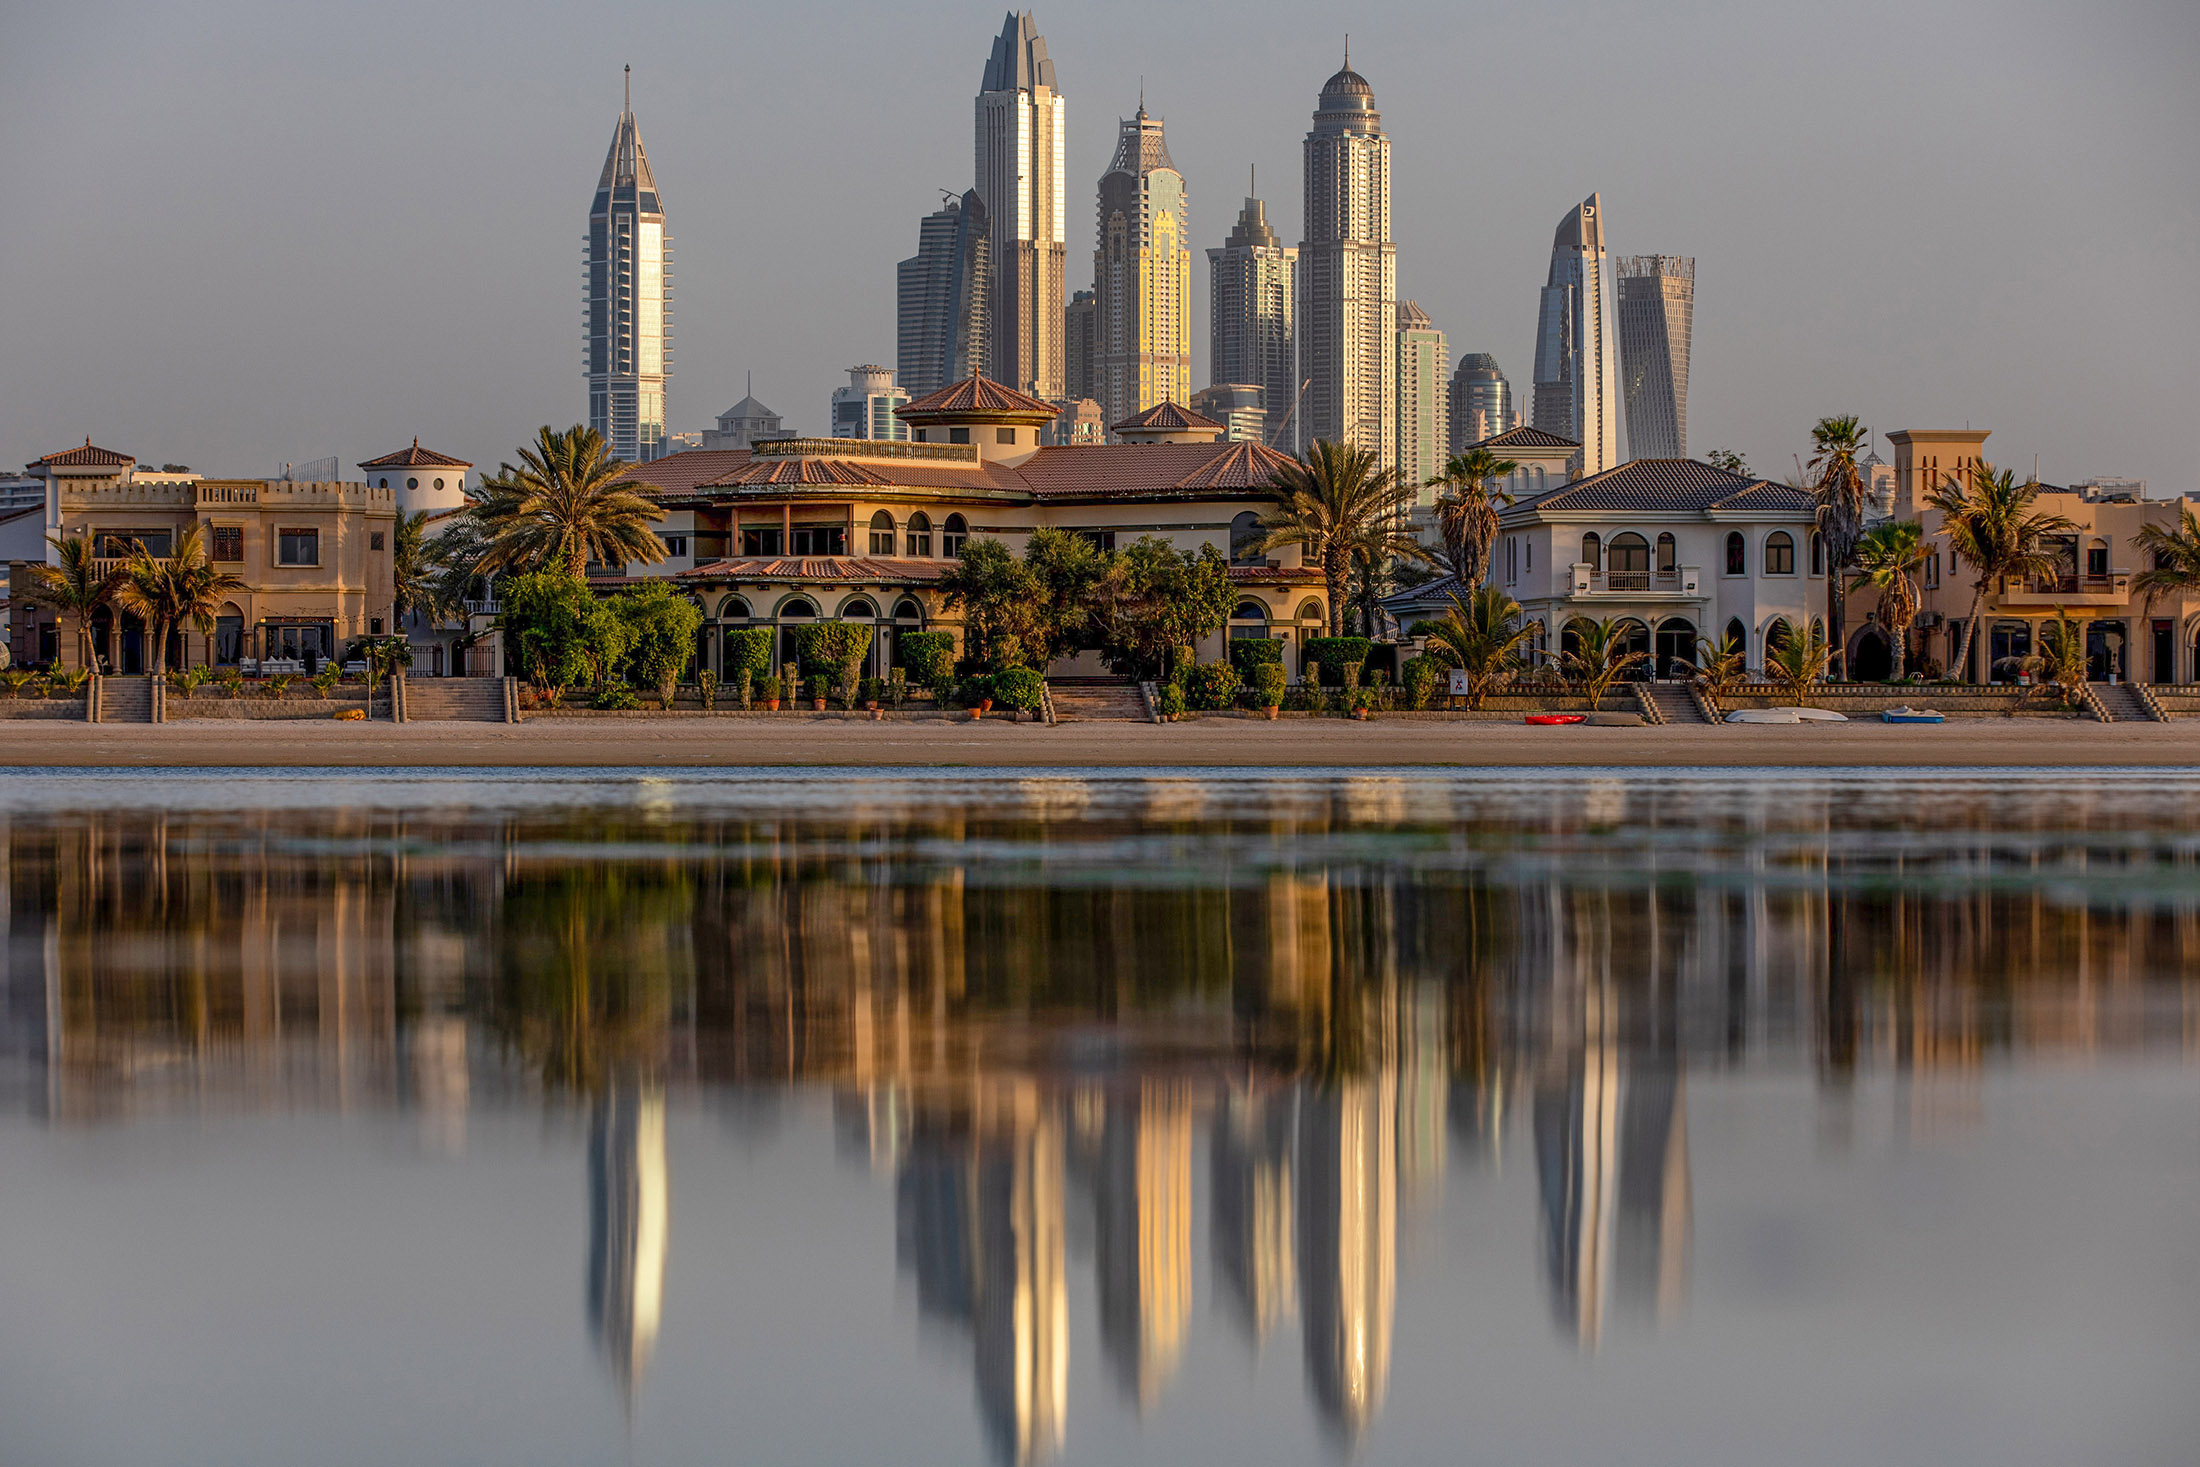 Villas on&nbsp;the Palm Jumeirah&nbsp;in Dubai, United Arab Emirates.&nbsp;